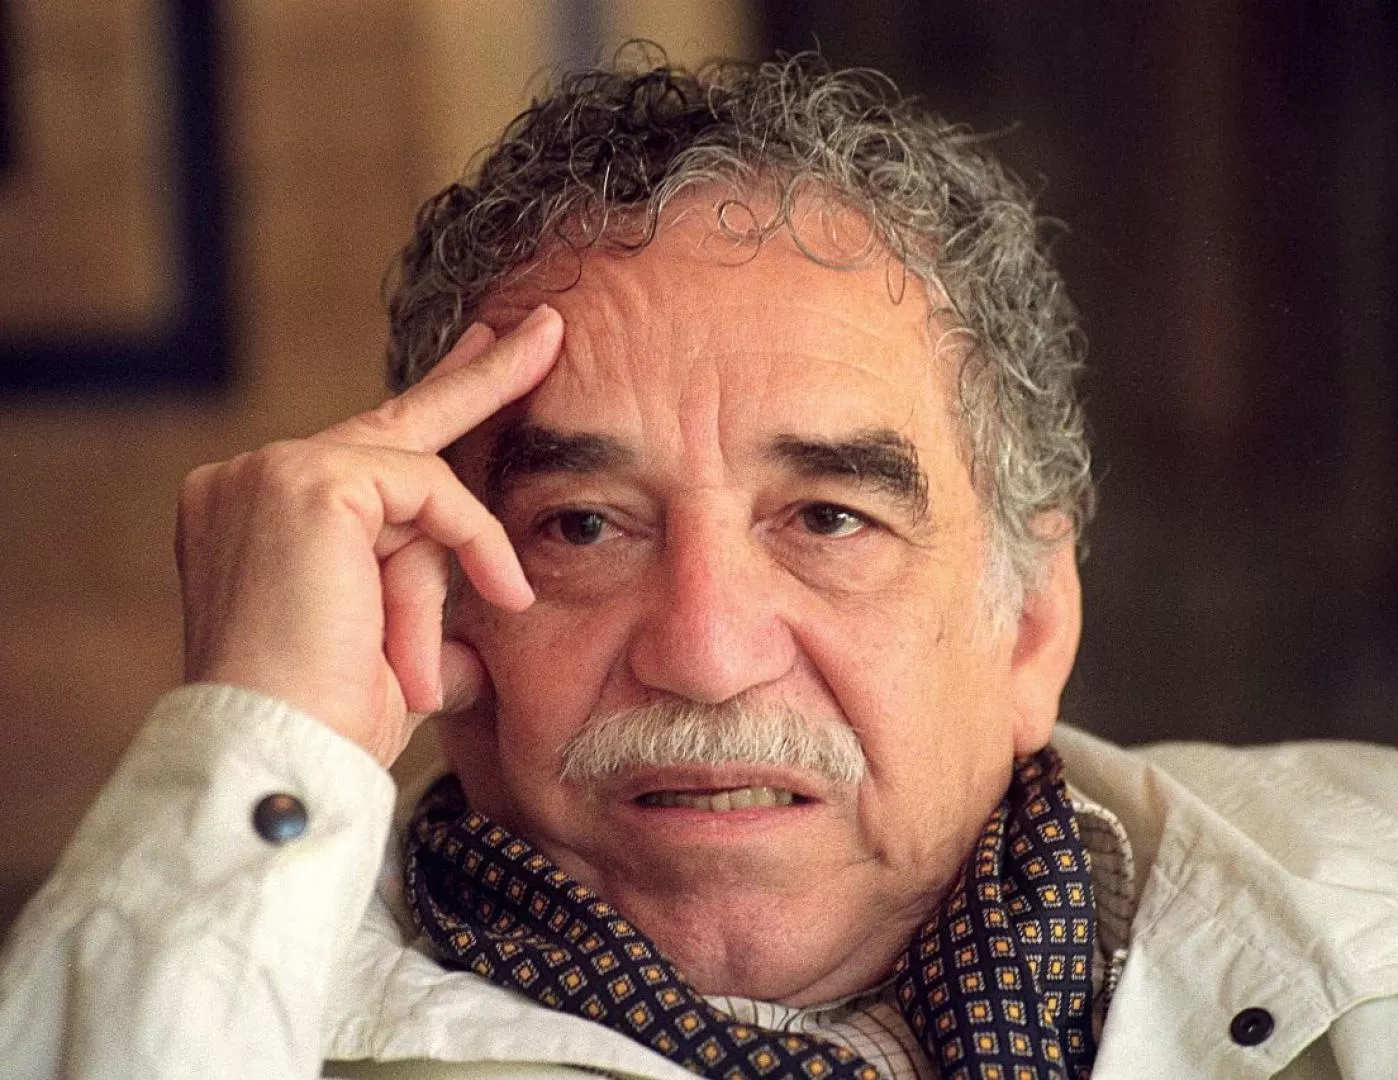 Este miércoles 23 de abril, Día del Idioma, Arauca se unirá a la Gabolectura, homenaje Nacional en memoria de nuestro ilustre escritor Gabriel García Márquez